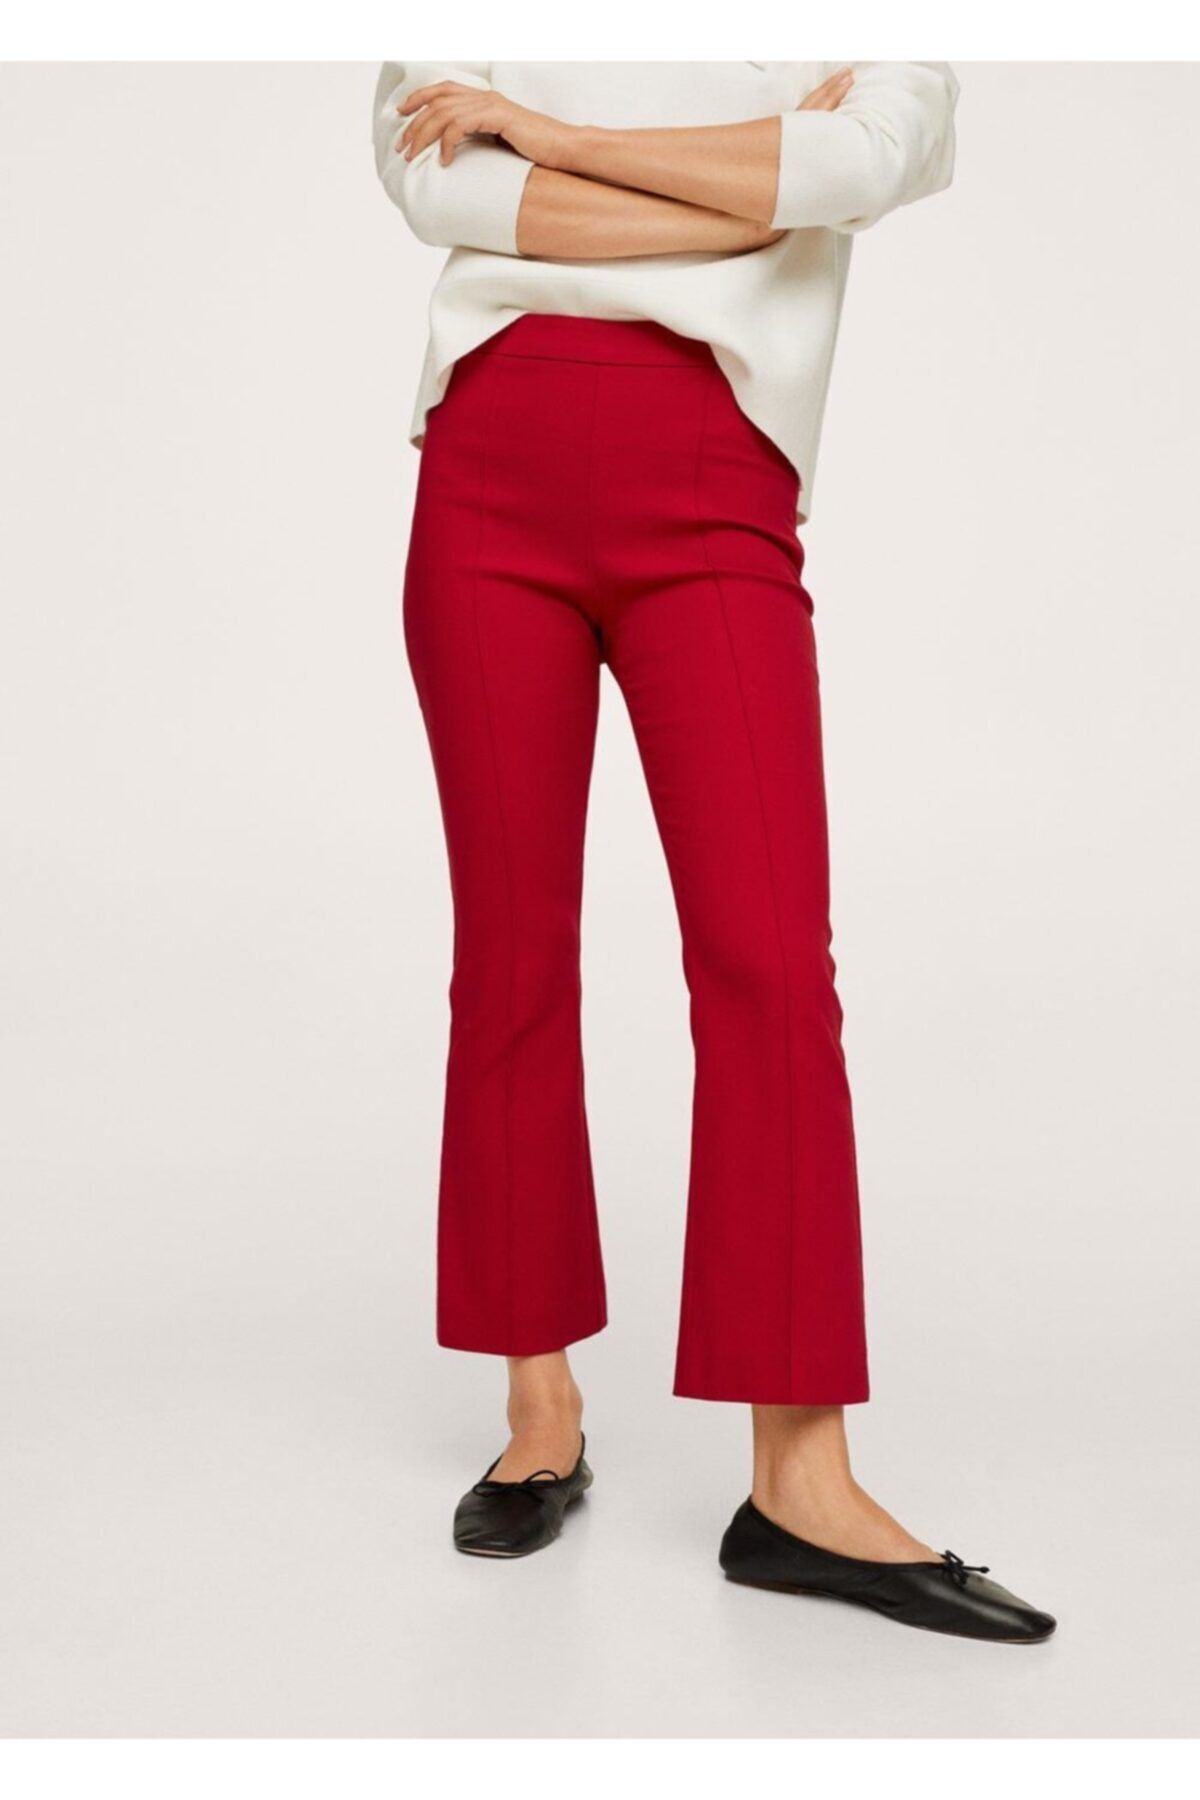 MANGO Kadın Kırmızı Kısa Ispanyol Paçalı Pantolon